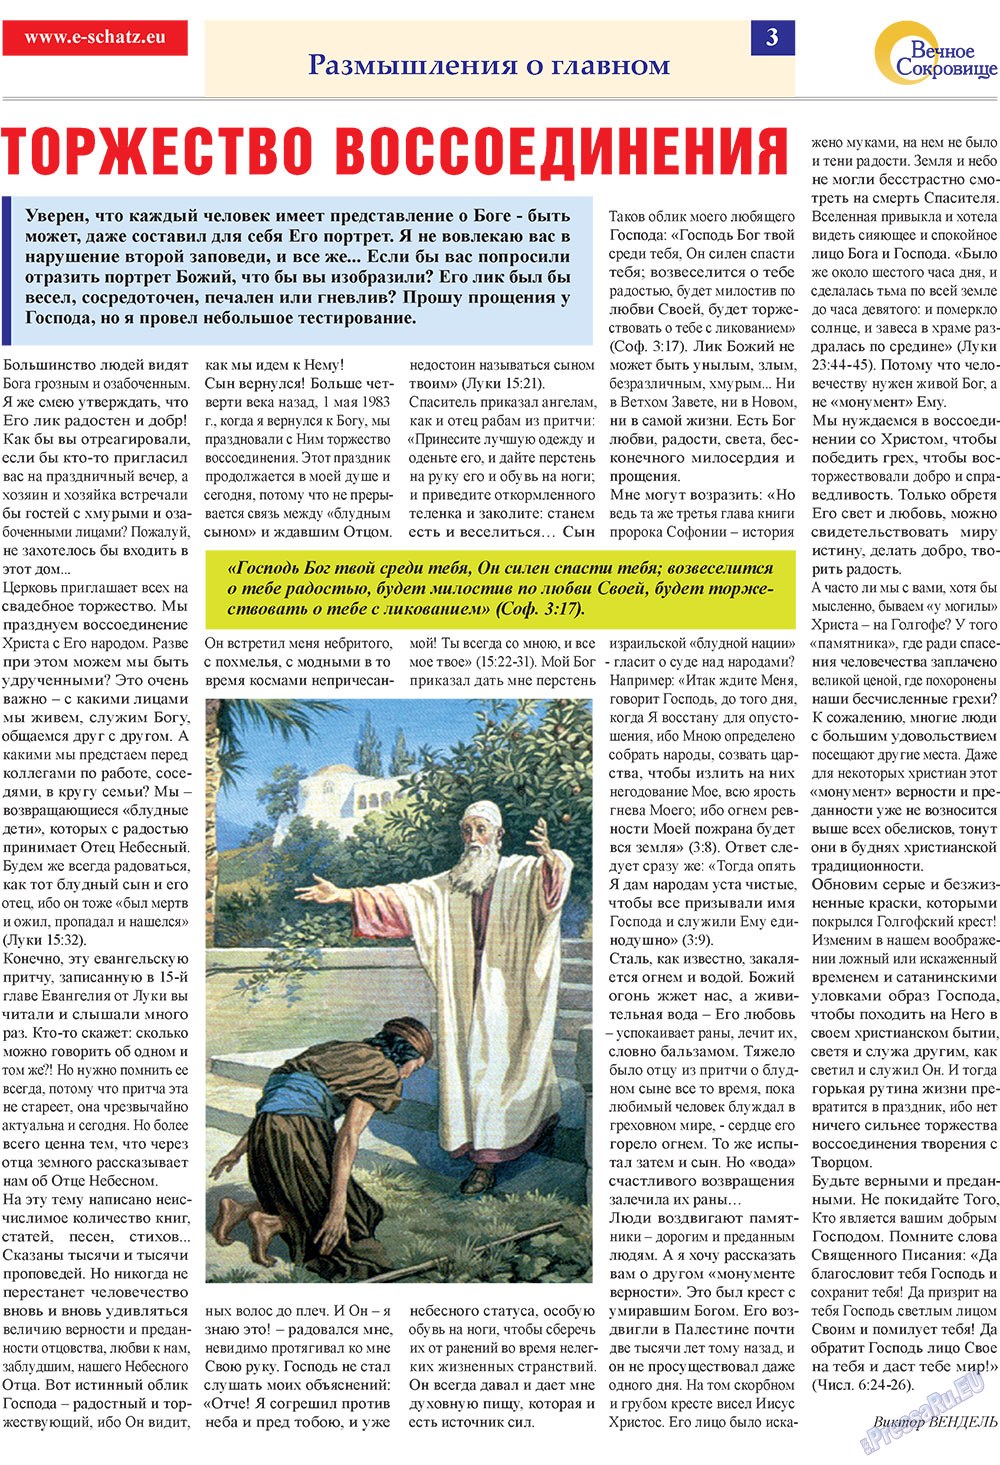 Вечное сокровище (газета). 2010 год, номер 1, стр. 3